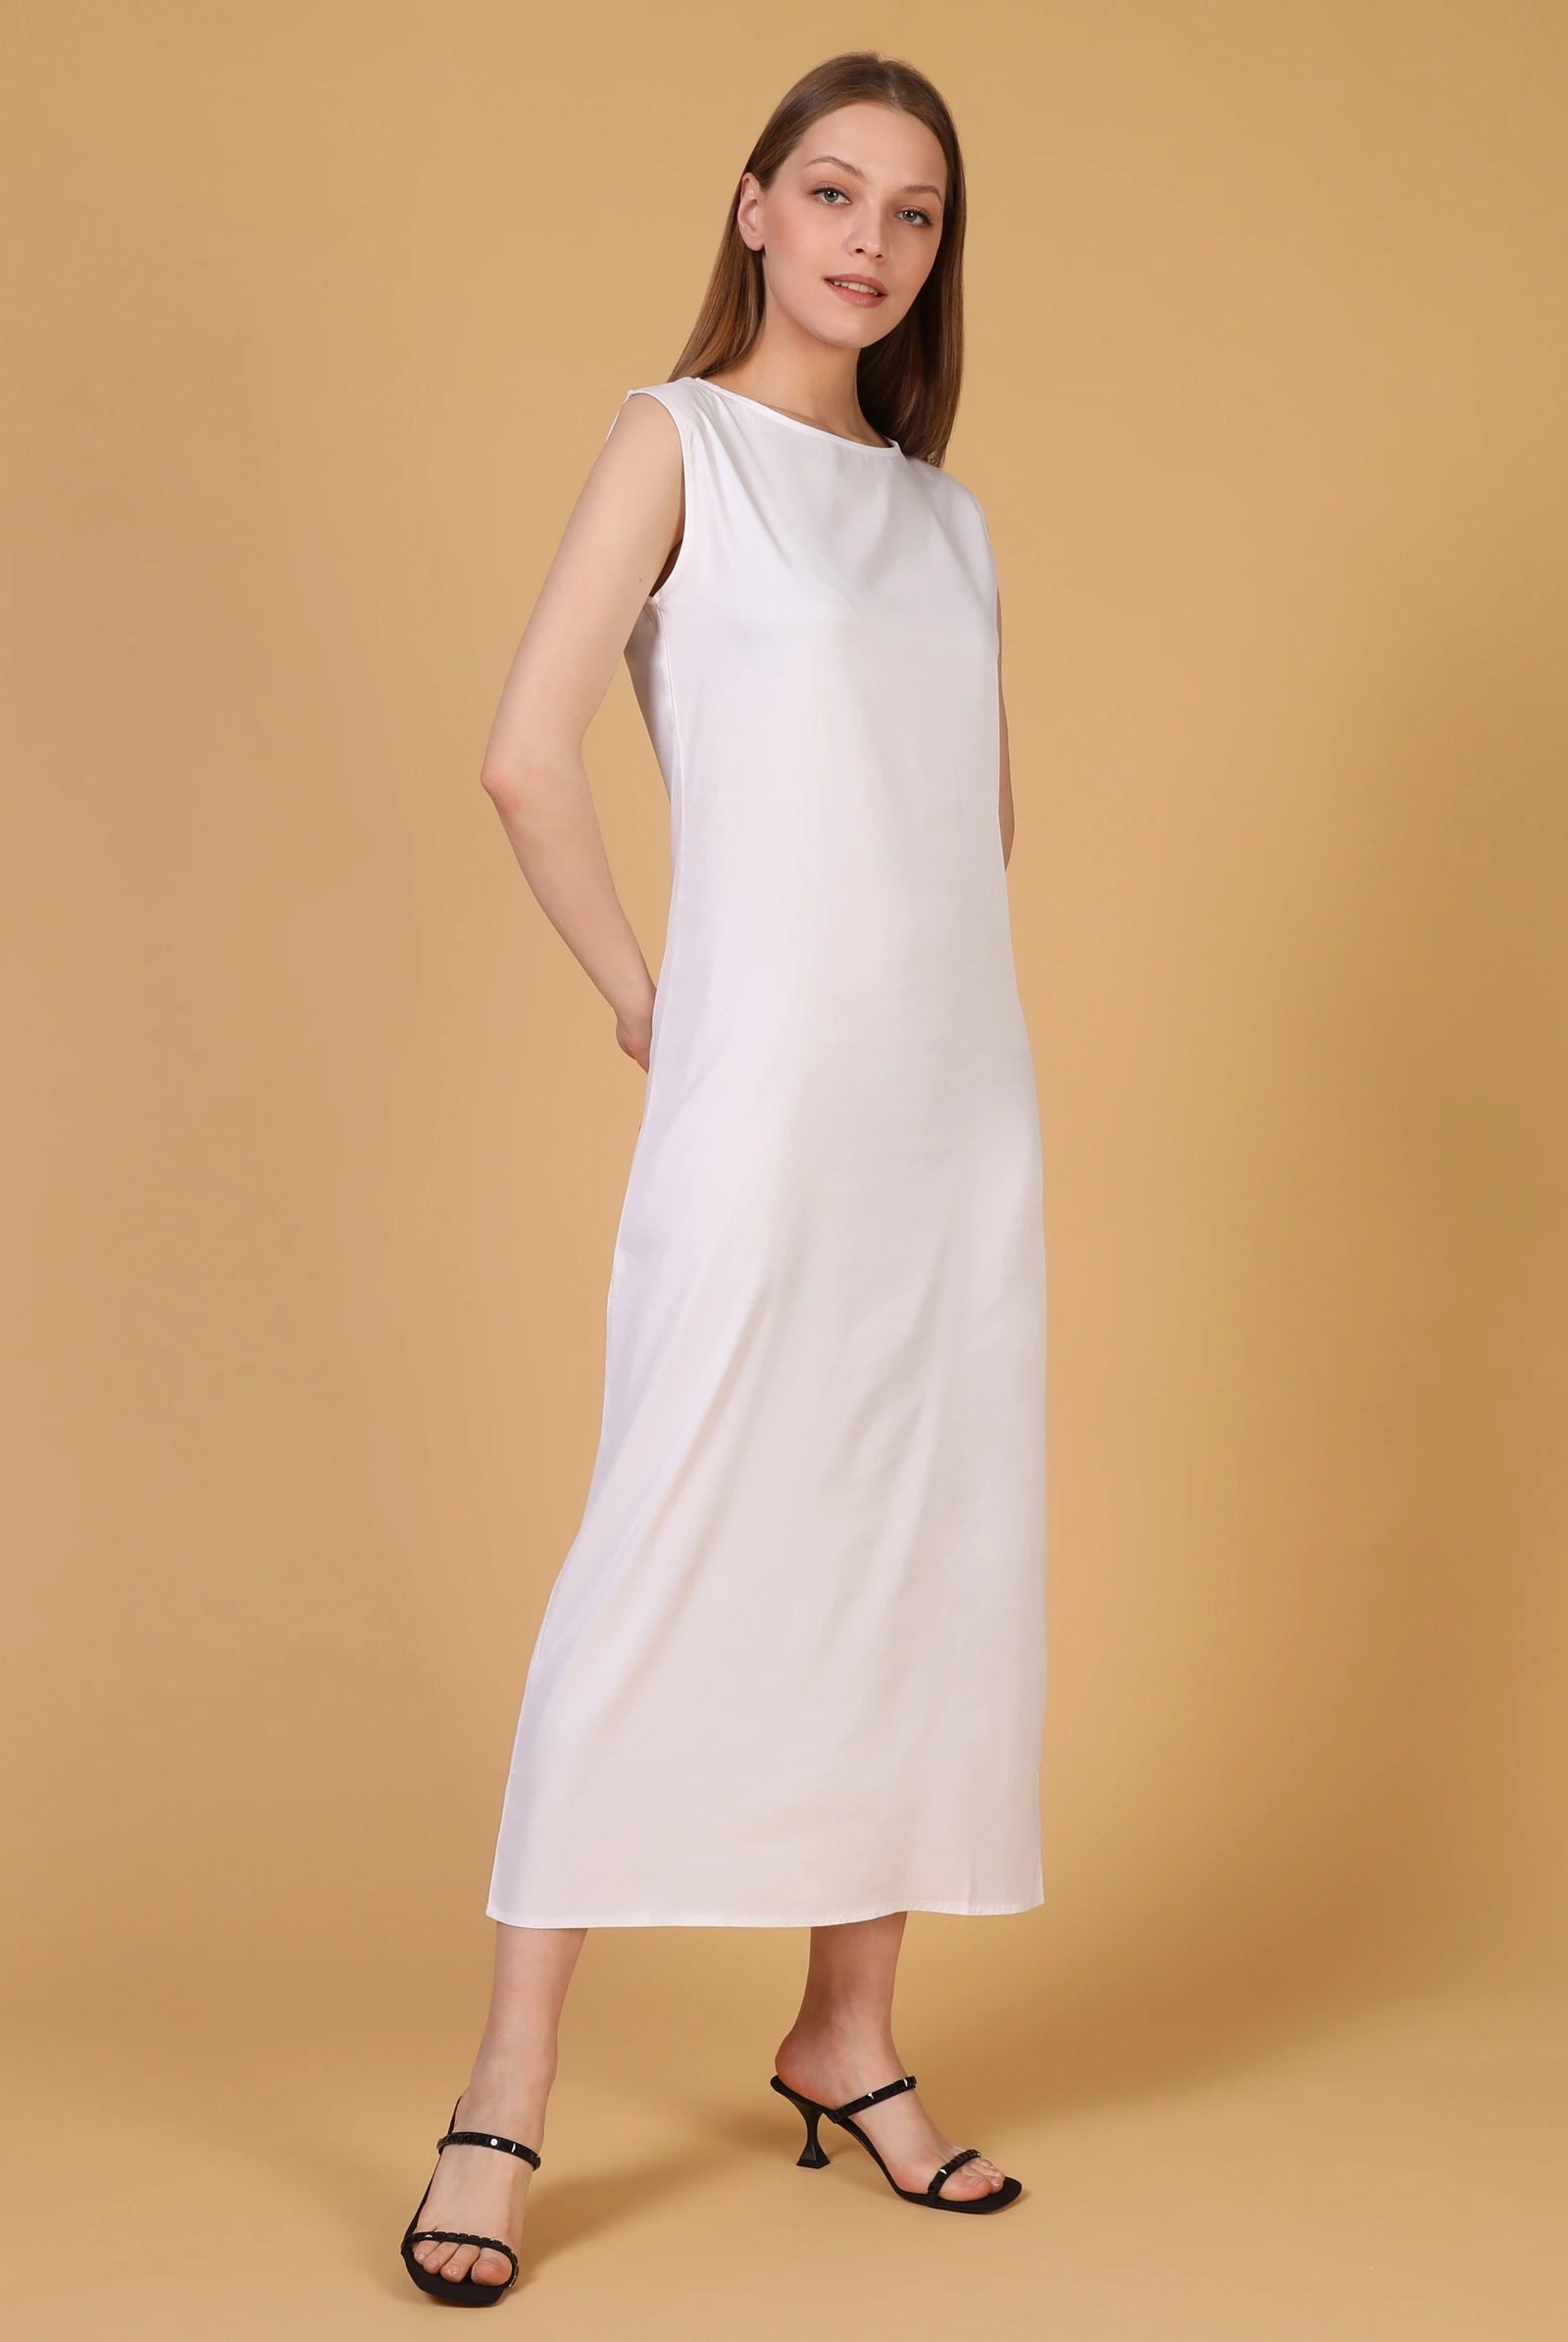 white inner dress